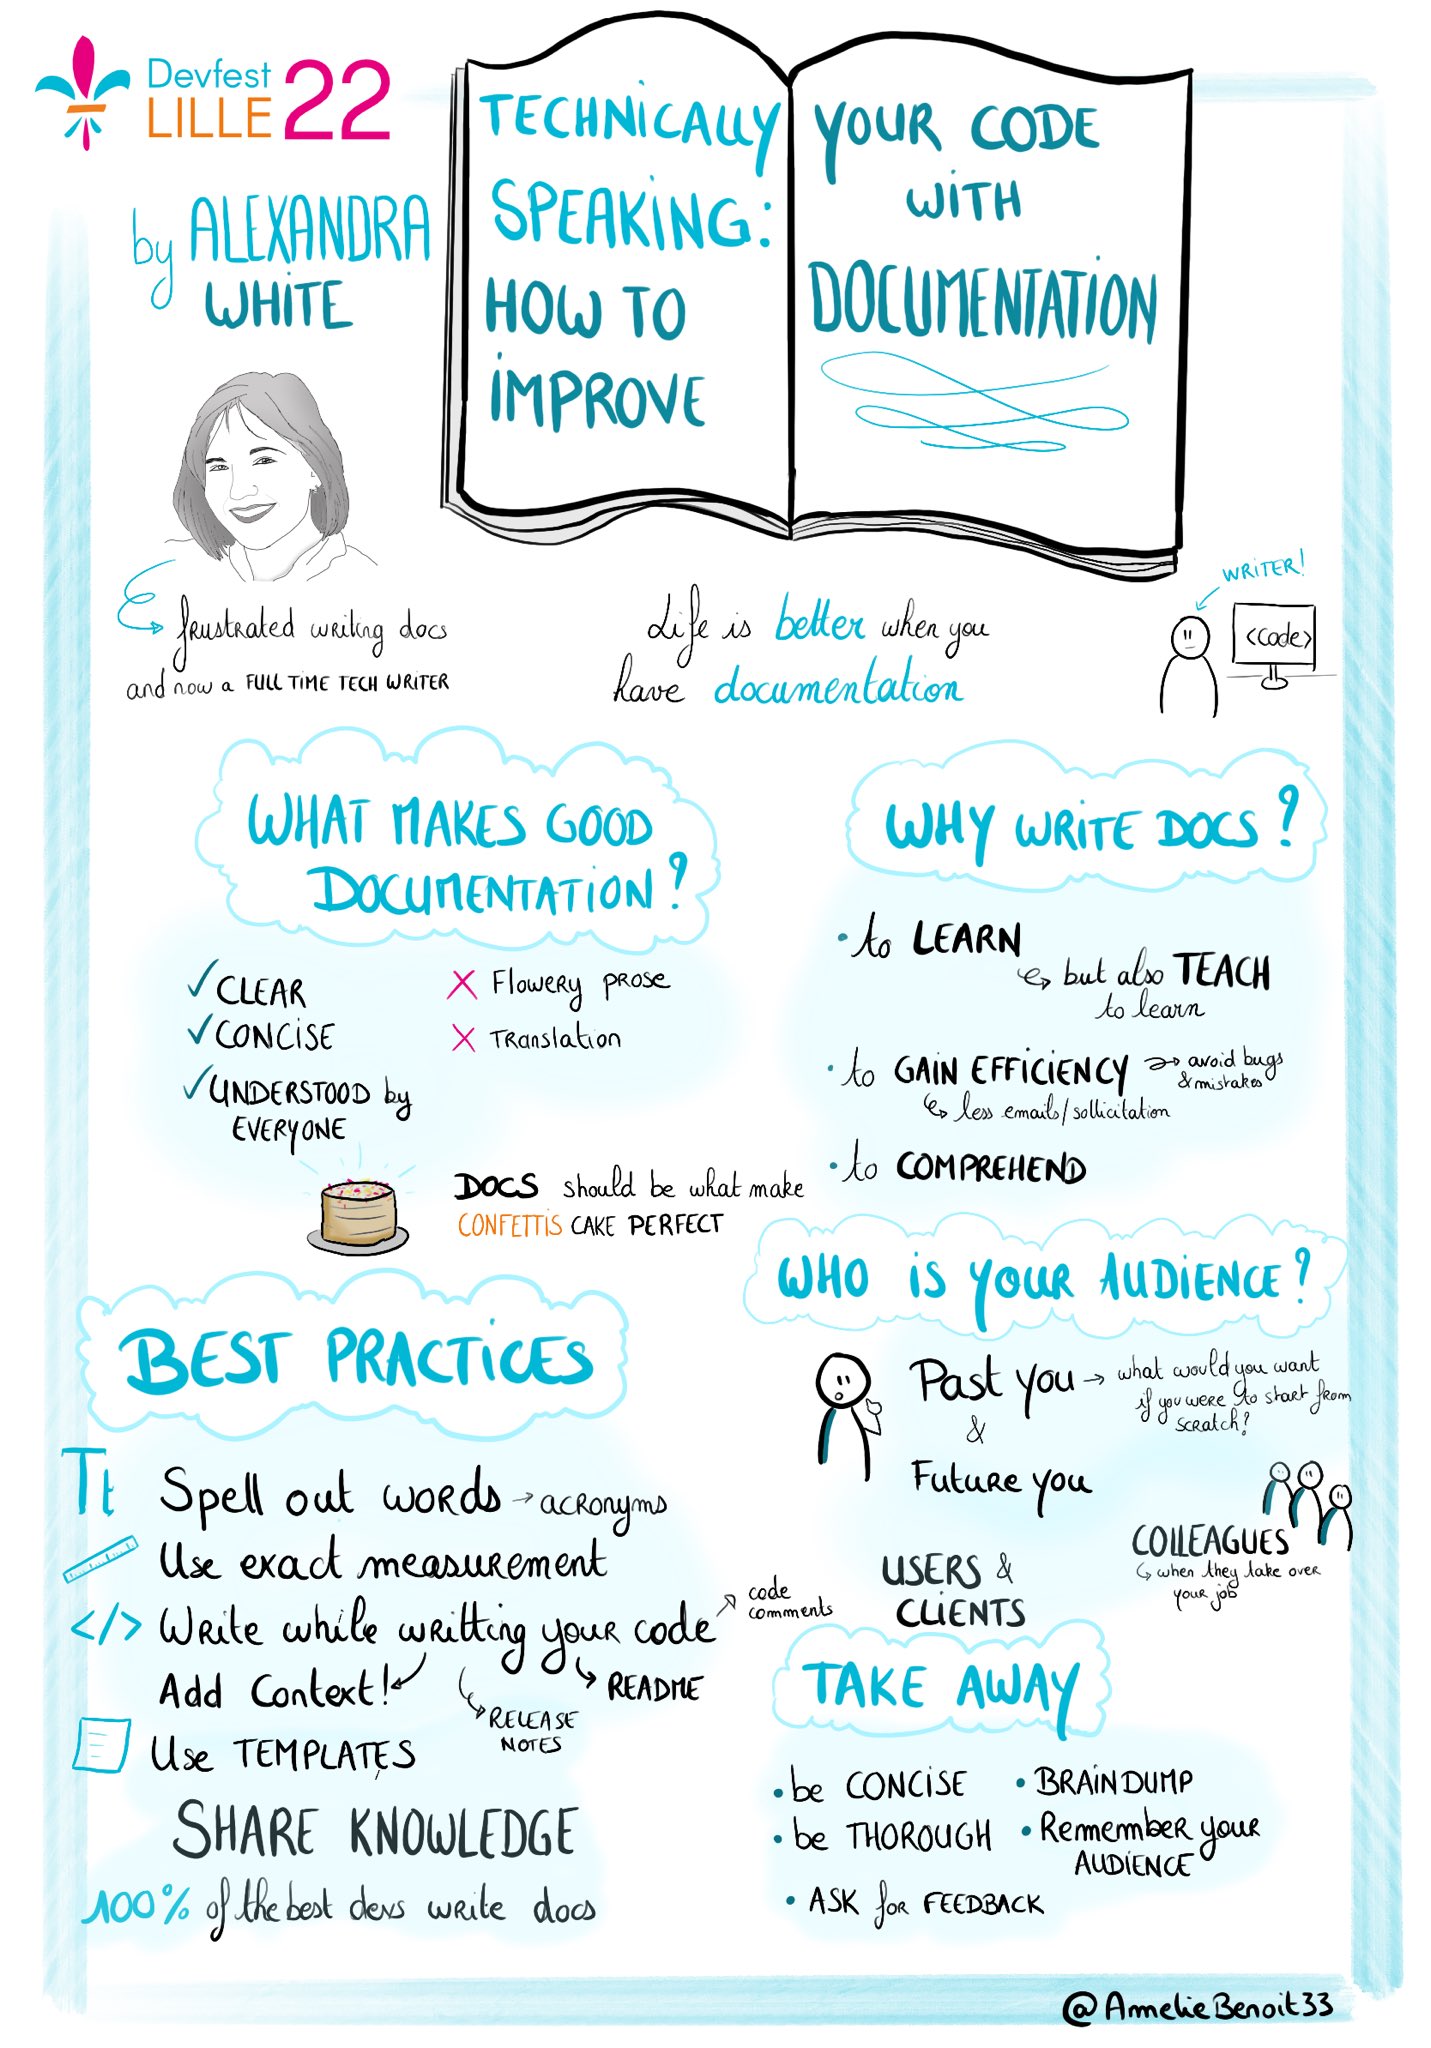 Sketchnote de la conférence d'Alexandre White sur le thème "Technically speaking: how to improve your documentation"